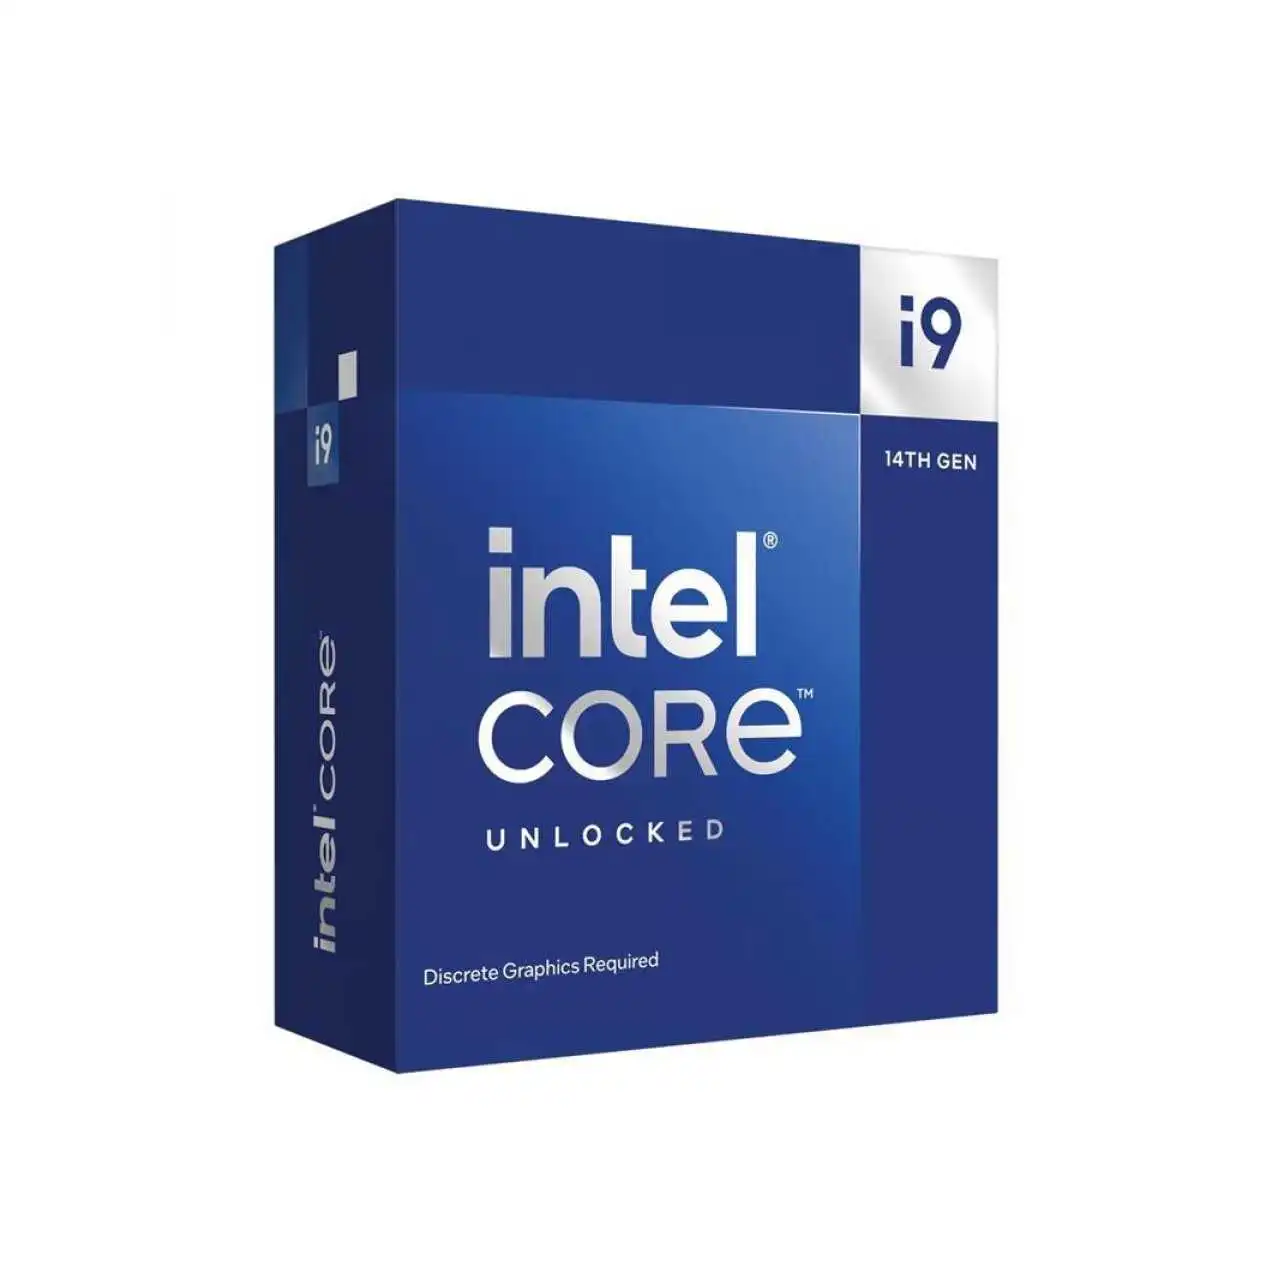 Intel-core-9-14900kf-3-2ghz-36mb-1700p-14-nesIl-ürün-resmi